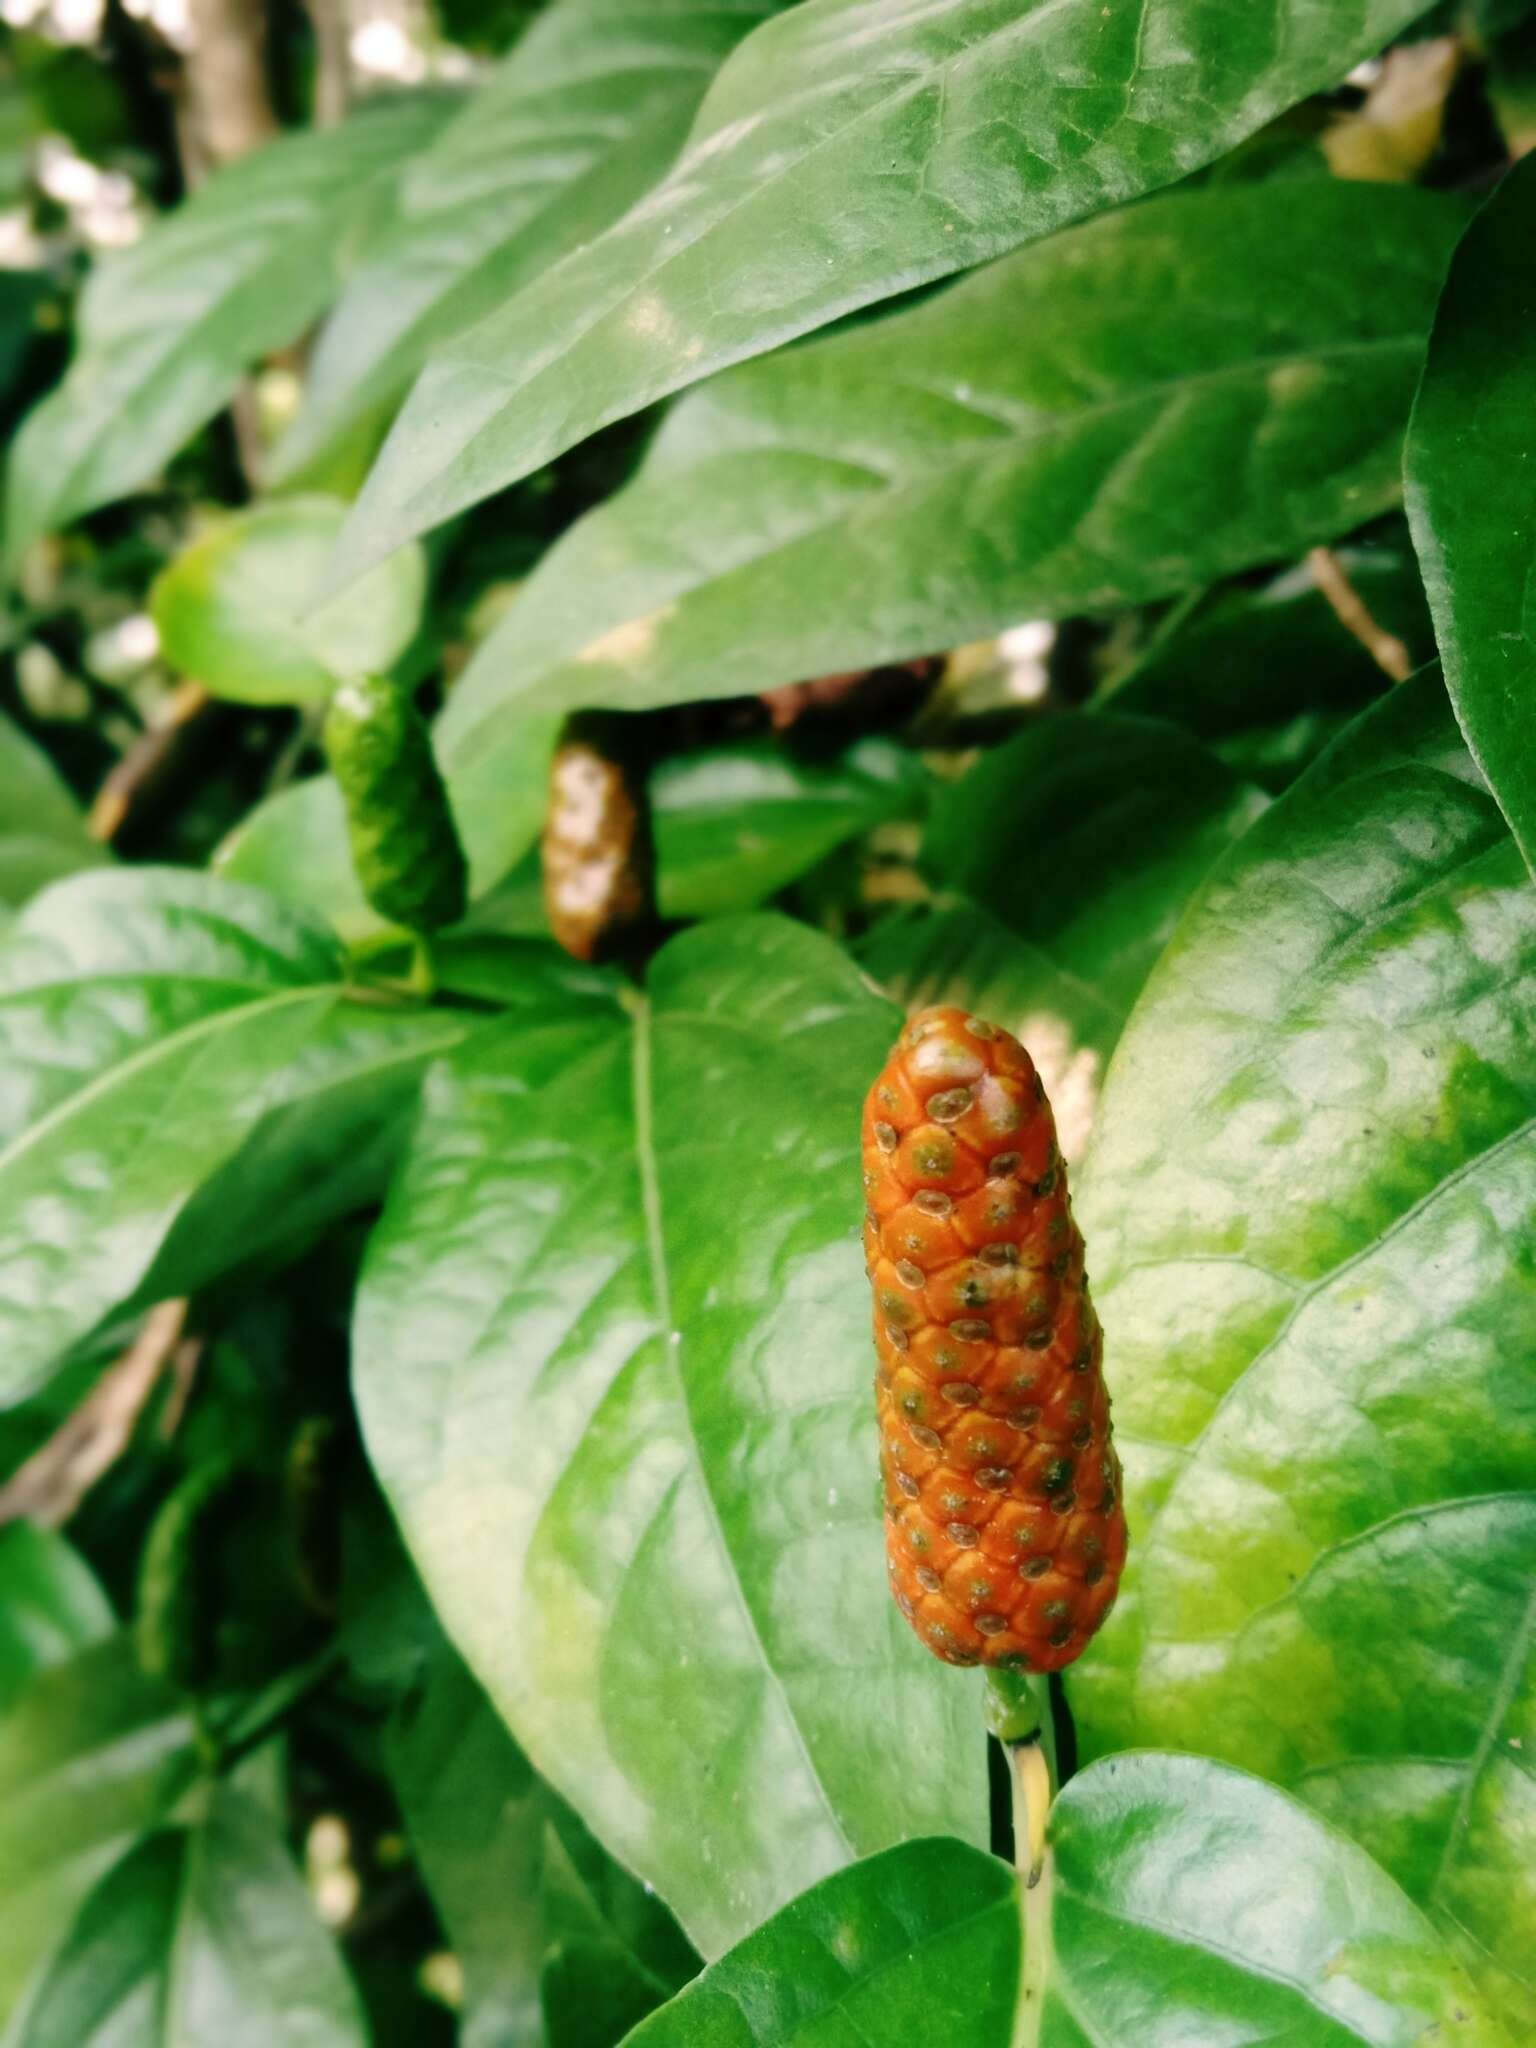 Image of Javanese long pepper